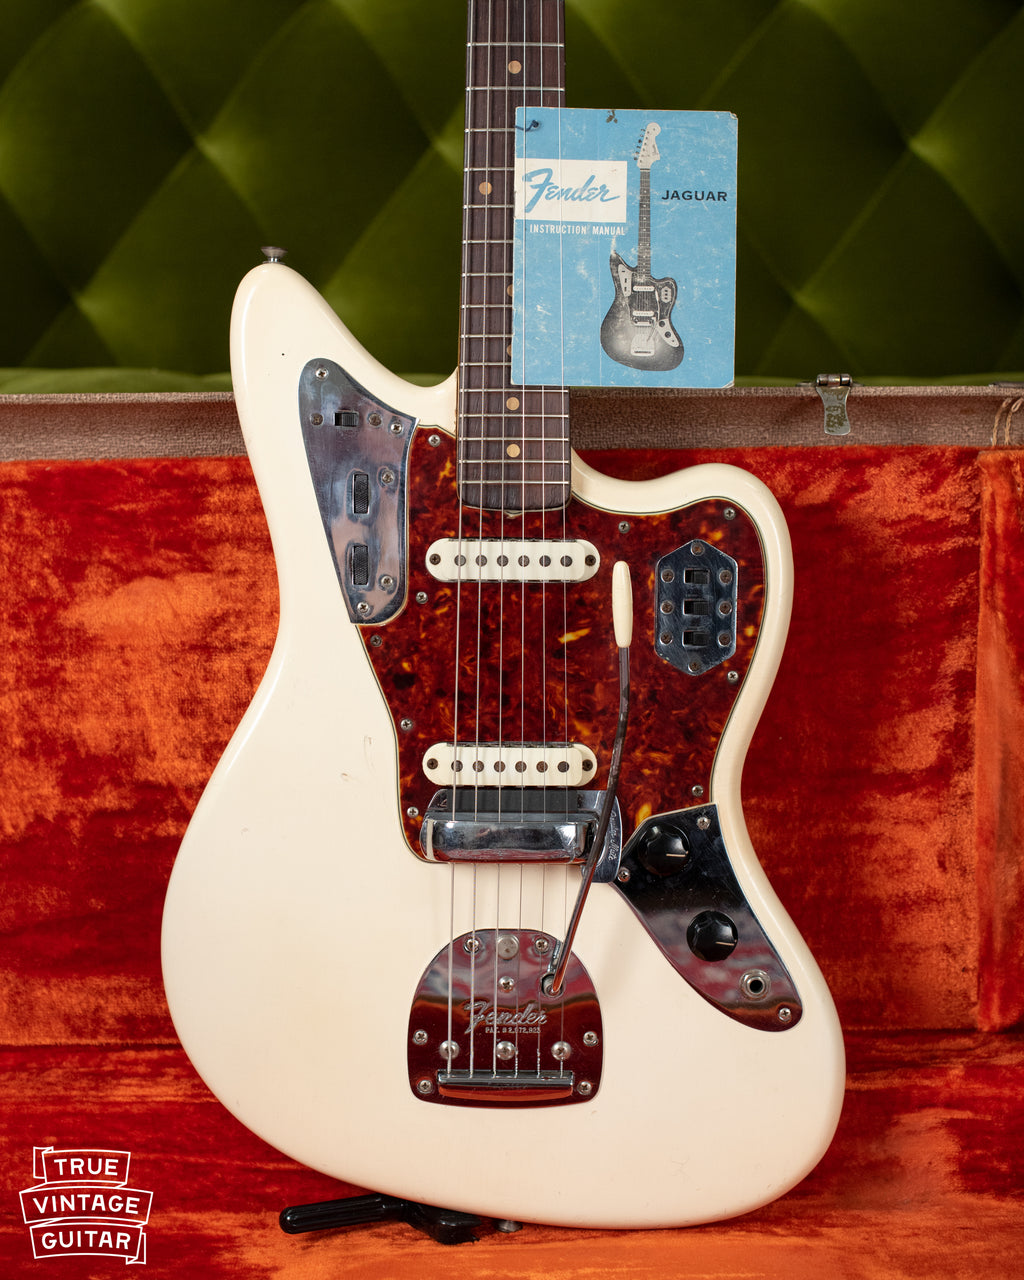 1962 Fender Jaguar Olympic White guitar